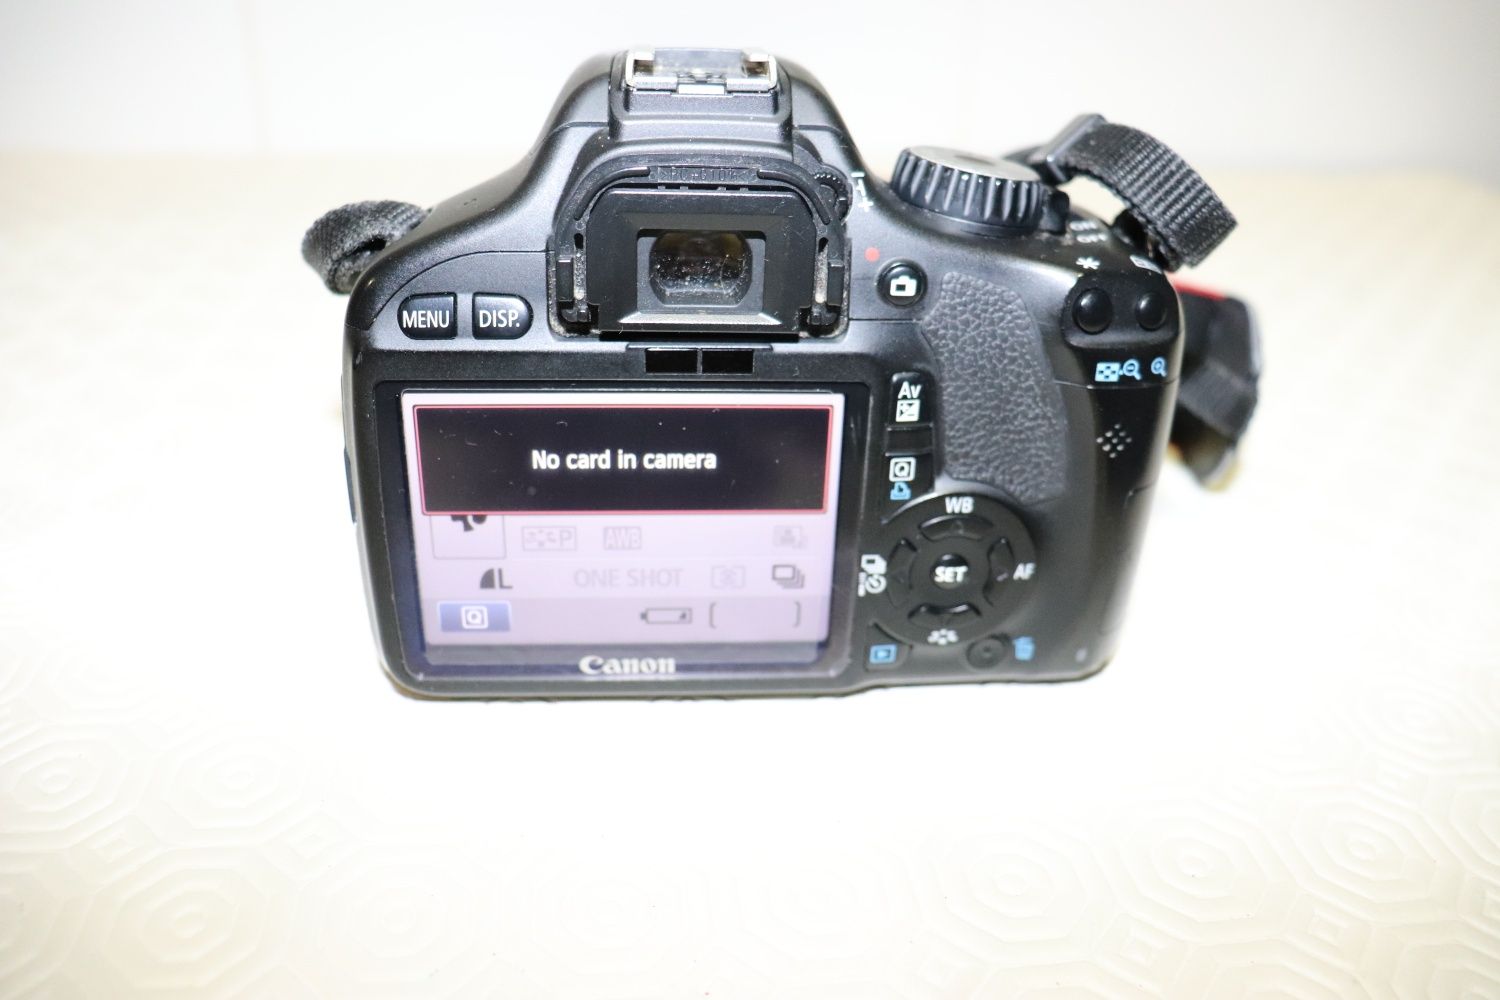 Canon EOS 550 D / kiss x4